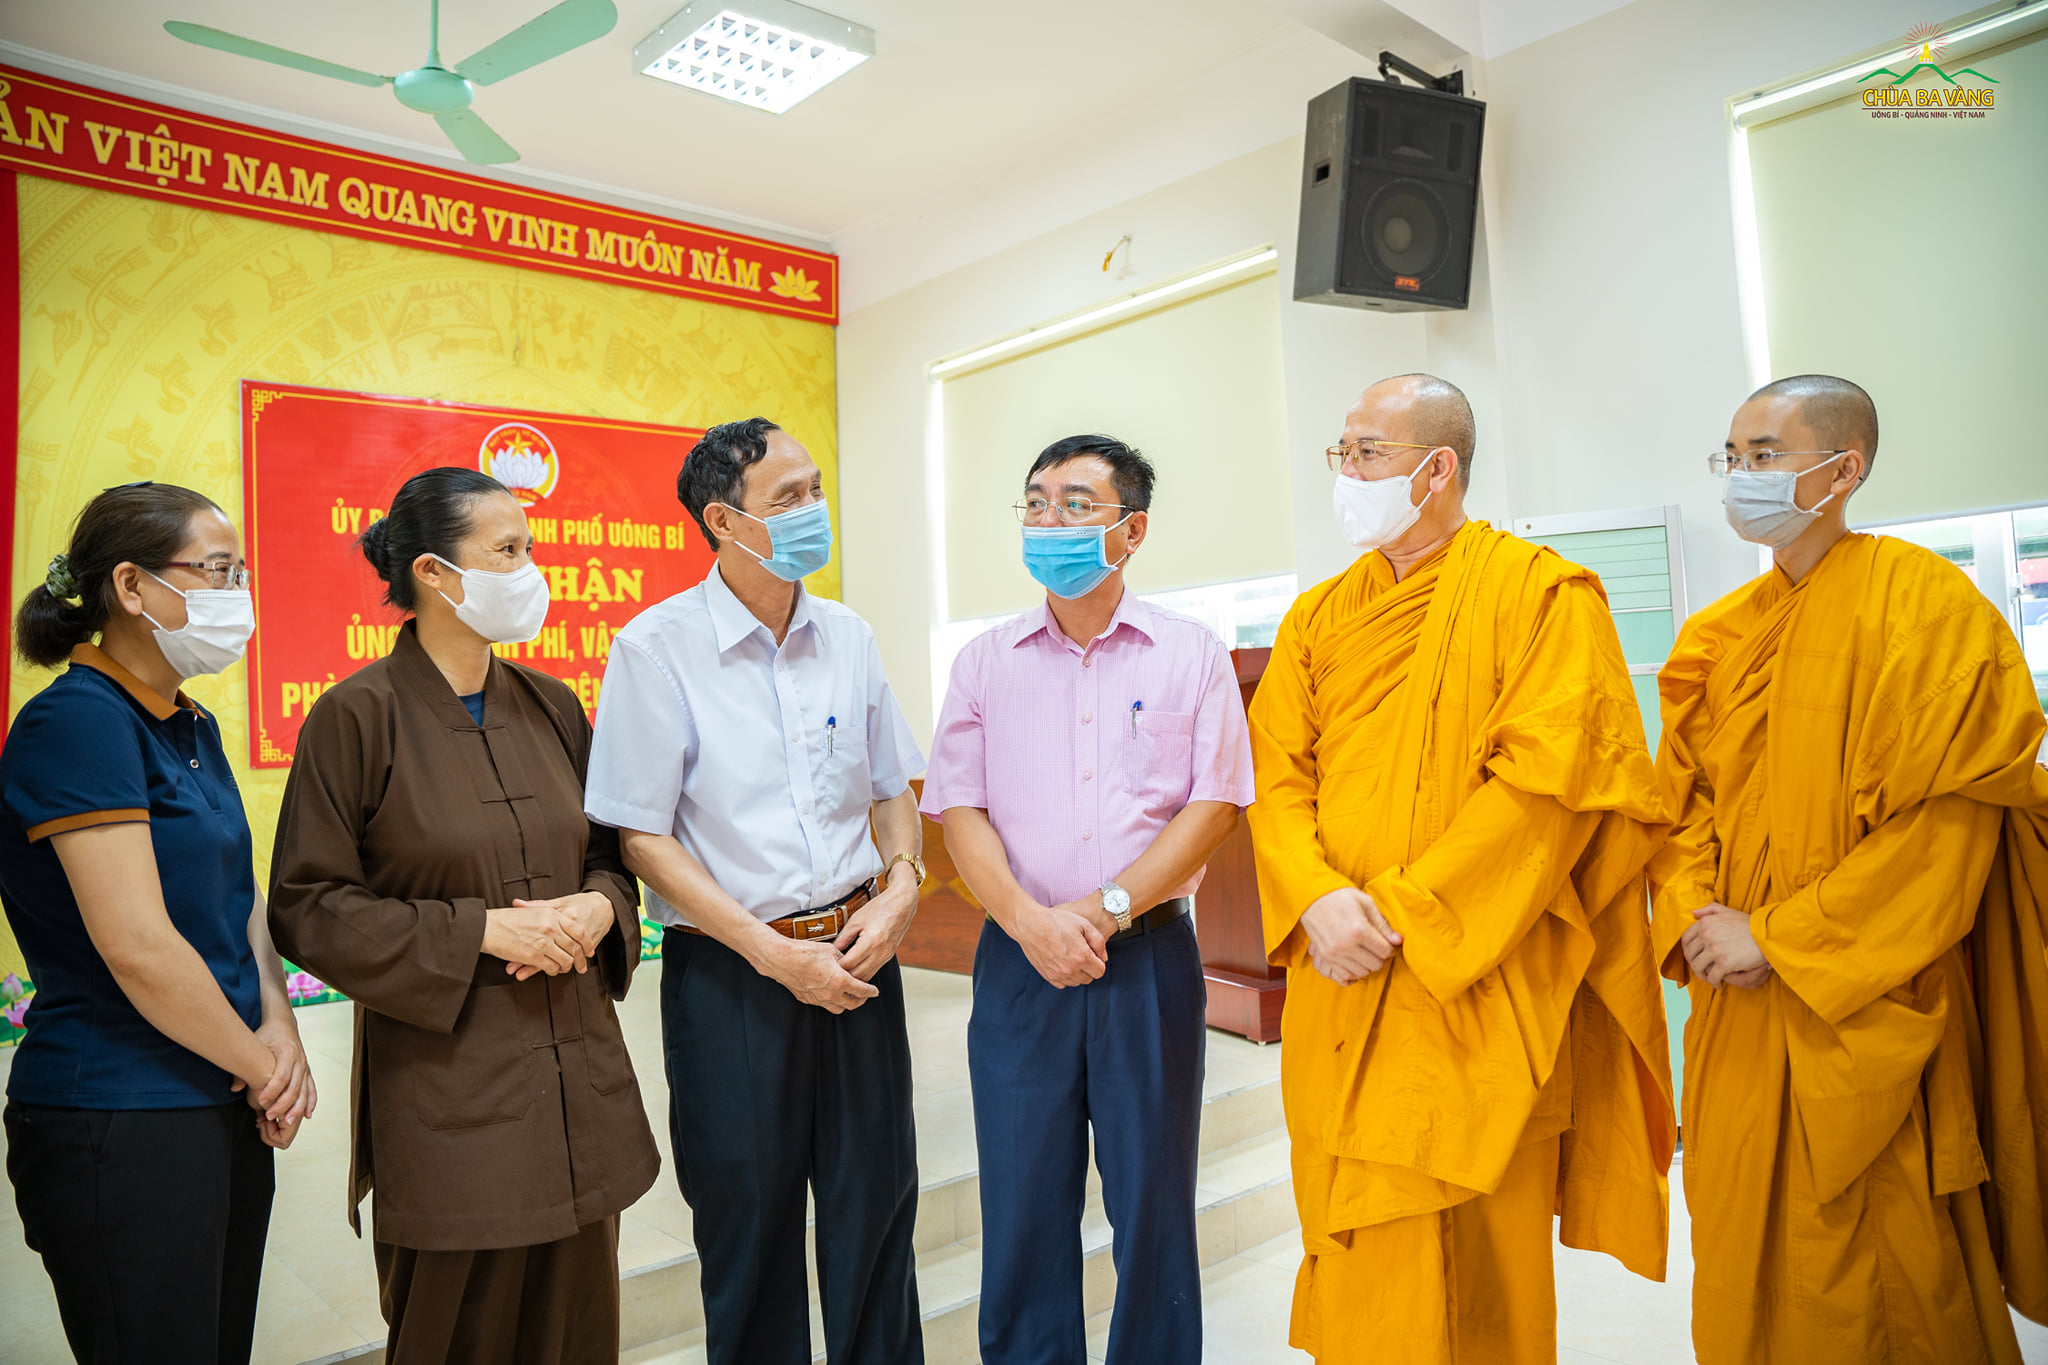 Đại diện cán bộ bày tỏ sự cảm kích và gửi lời cảm ơn tới Sư Phụ Thích Trúc Thái Minh cũng như Phật tử Câu lạc bộ Cúc Vàng với những đóng góp tích cực trong công tác phòng, chống dịch của thành phố